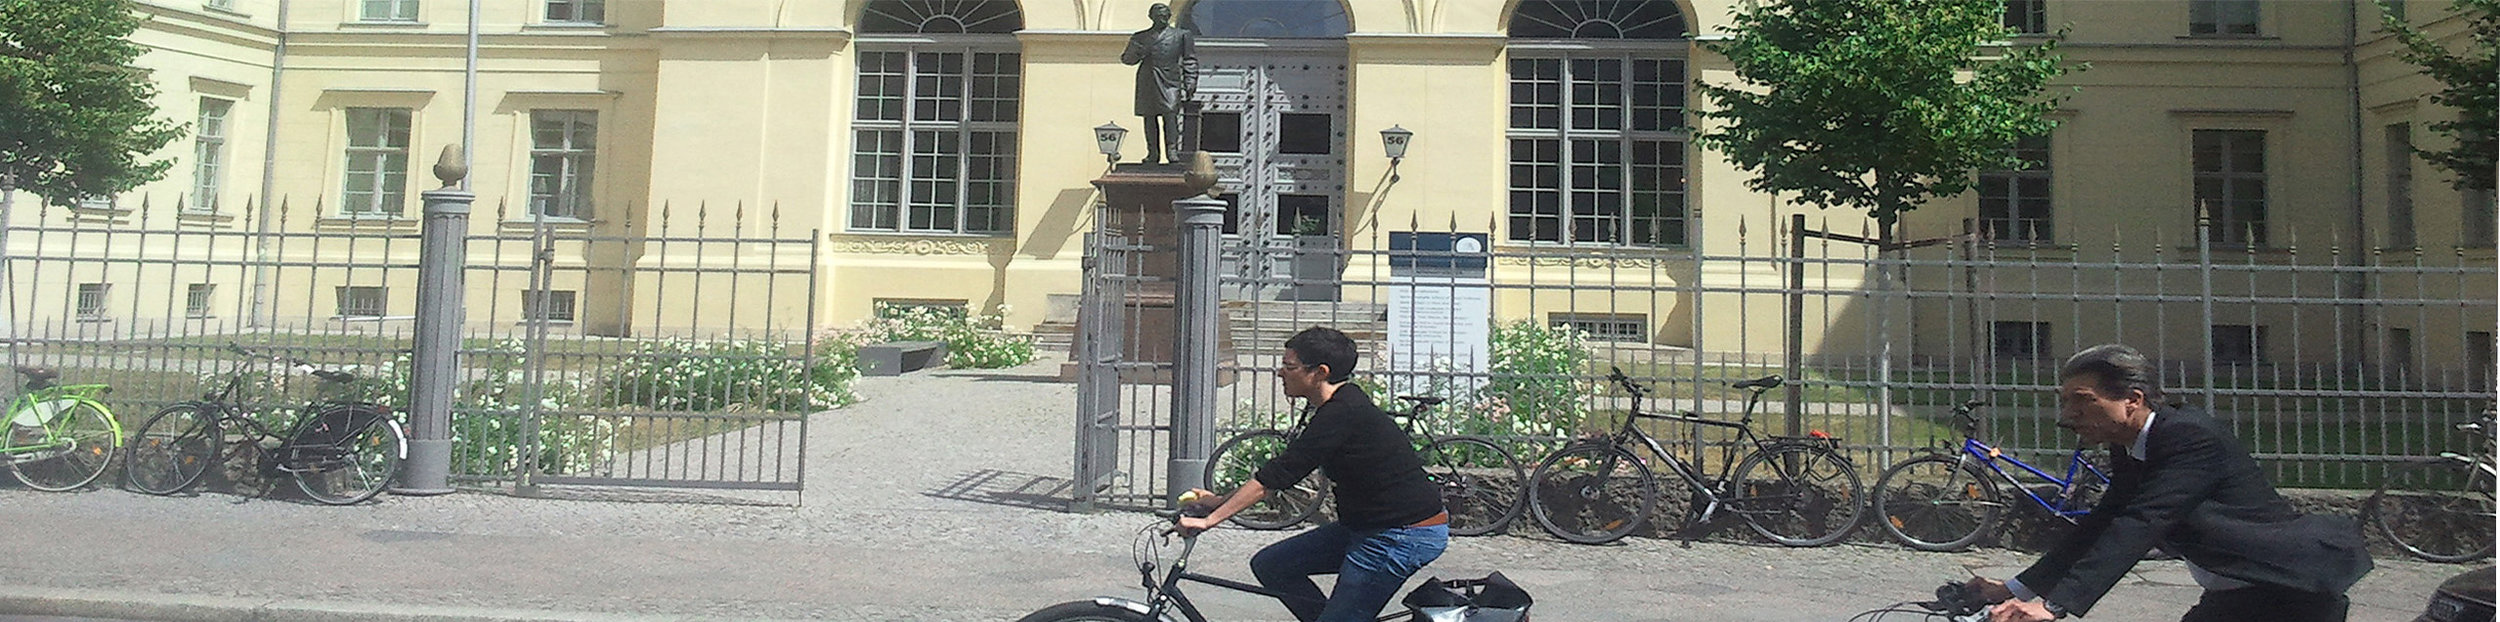 BMSEK_Bilder_HU Graduate School 2_OPT_2014-06-18 14_STREIFEN 900p hoch mit Fahrrädern.jpg